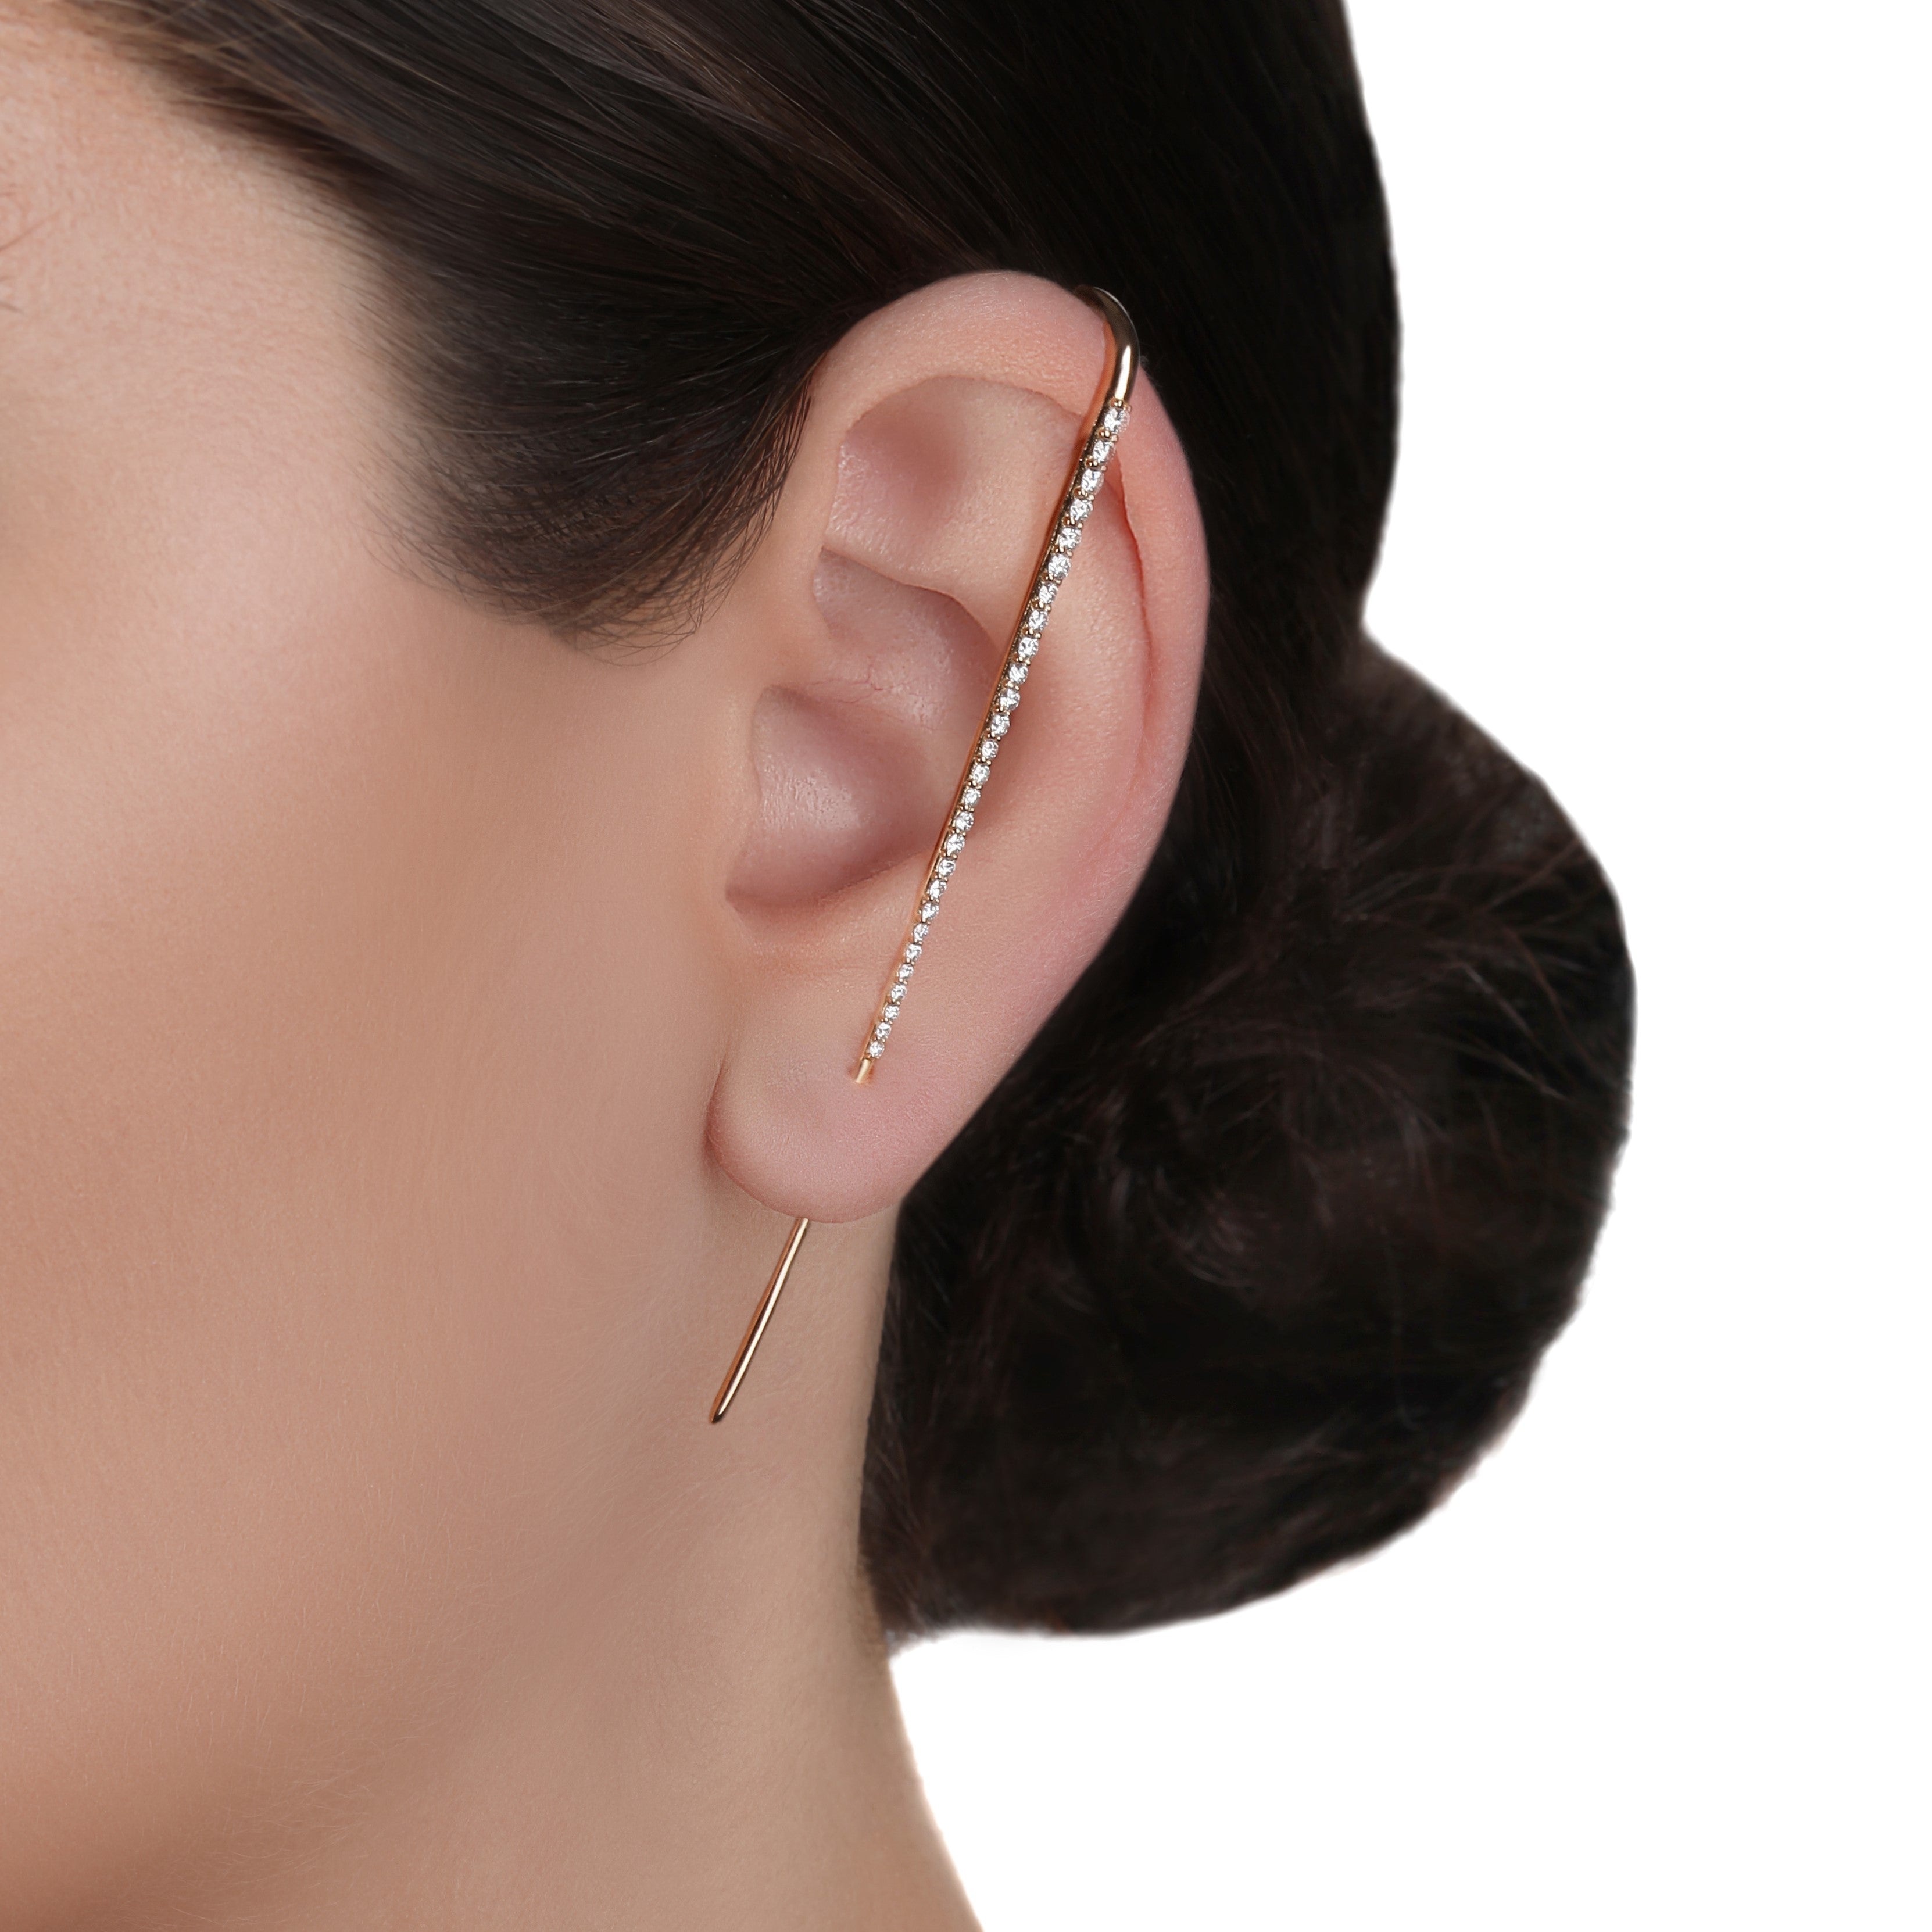 Single Side Long Thin Bar Ear Cuff Earring | Top Online Store